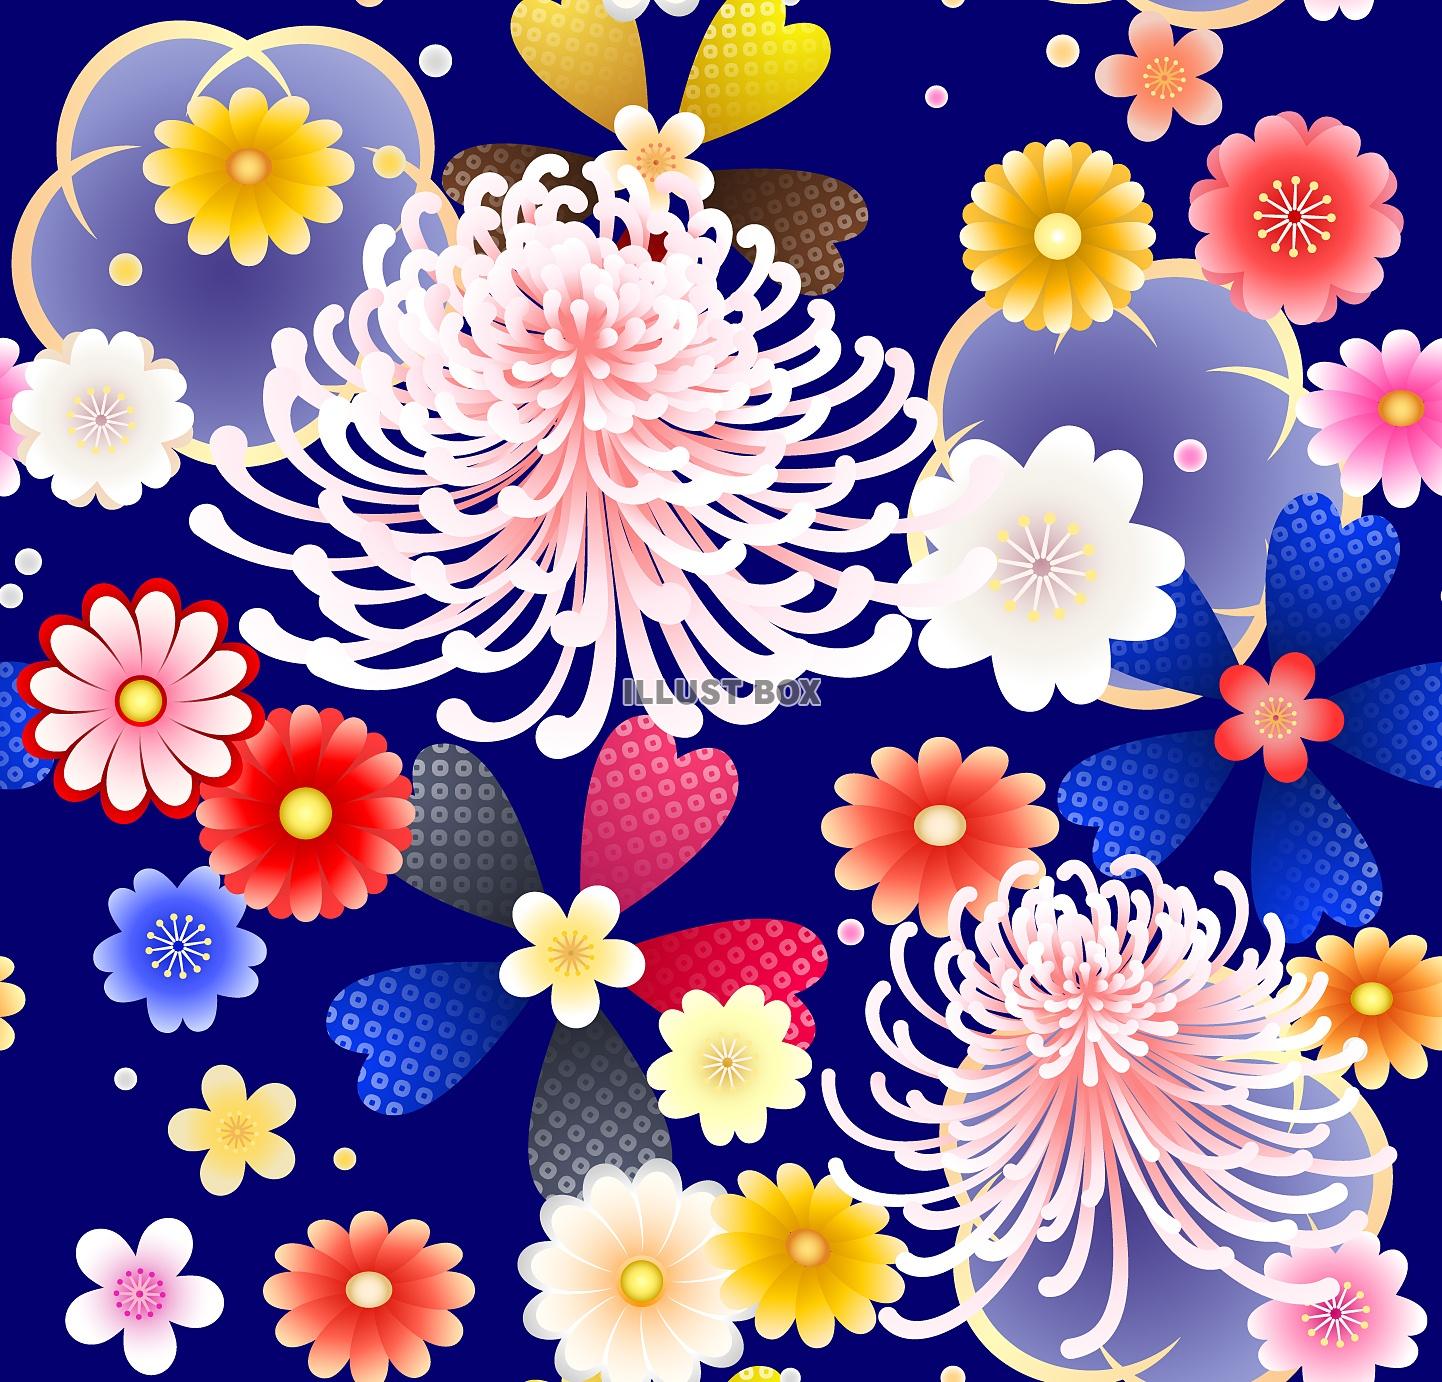 無料イラスト 和風菊と桜の青地パターン Jpg Eps